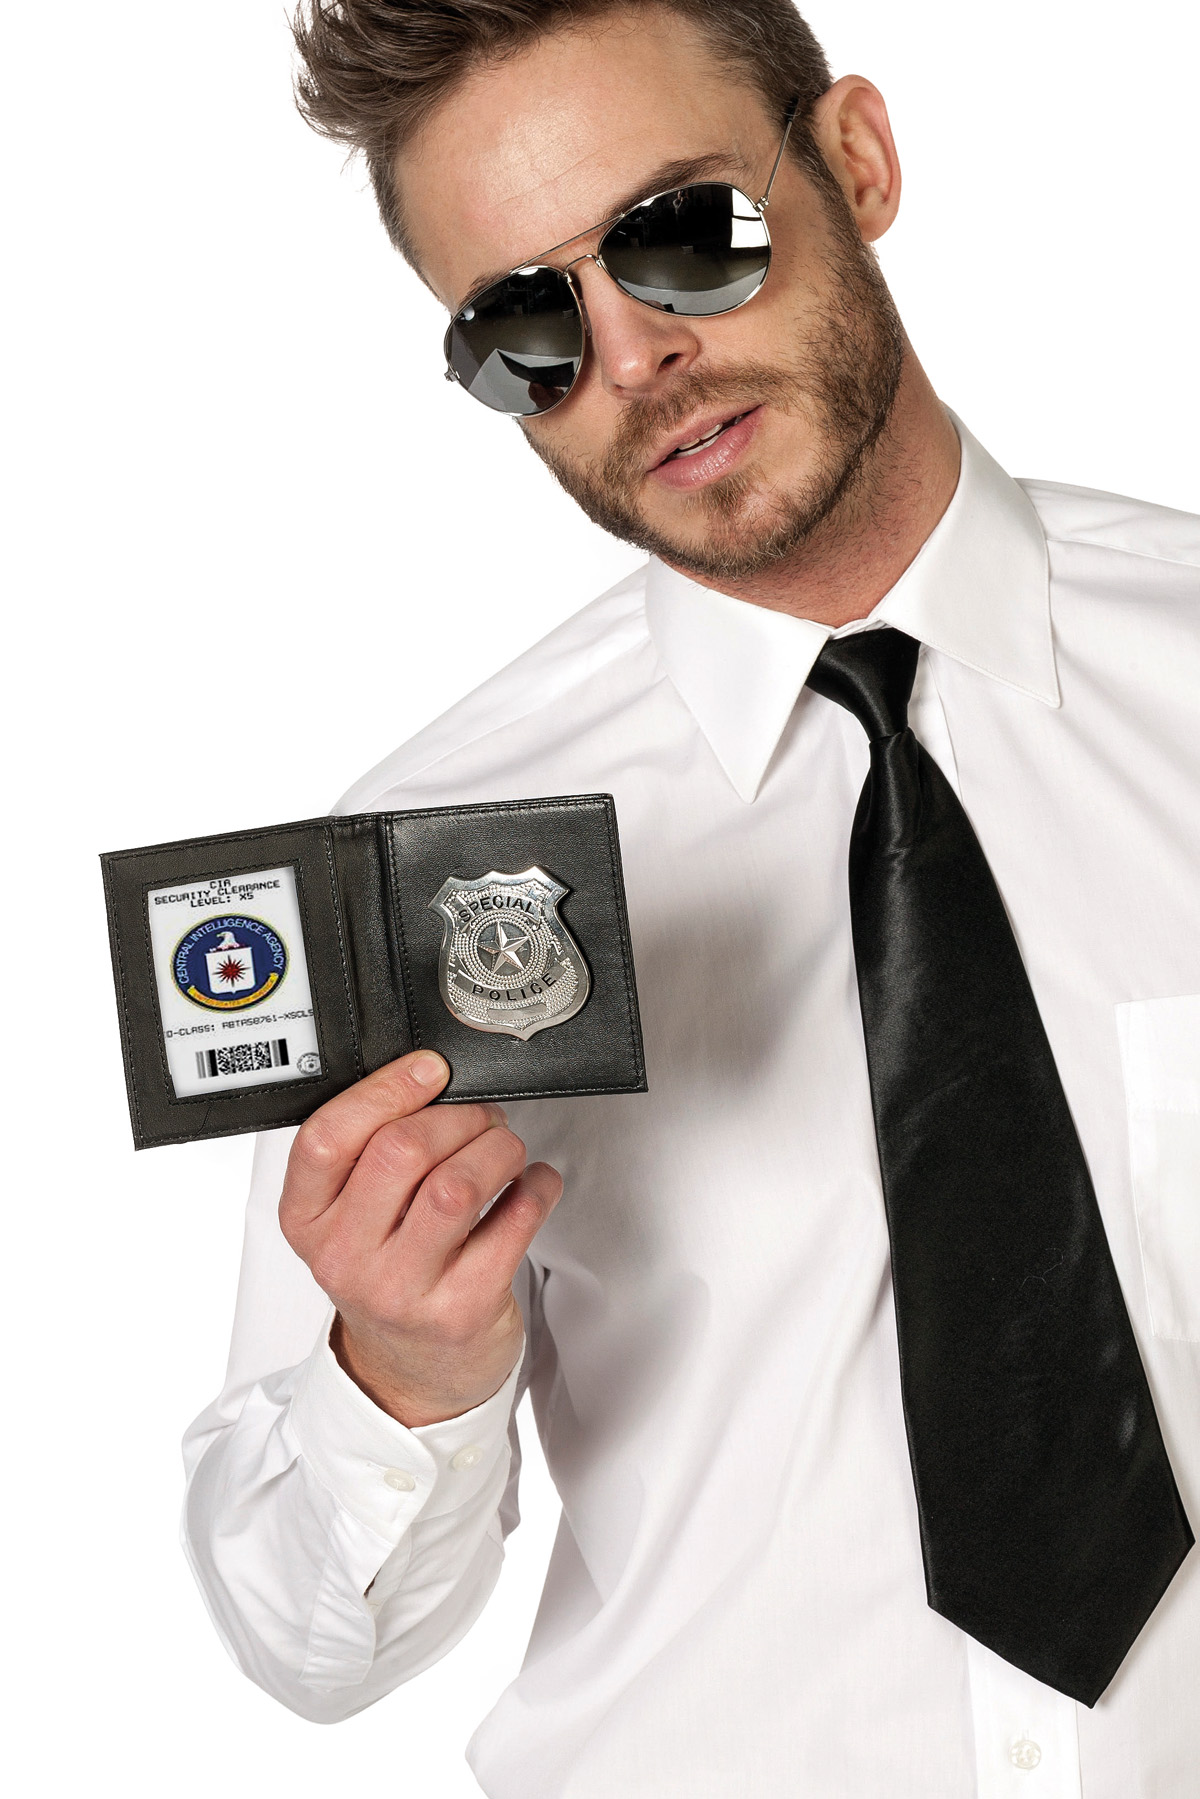 ID met badge police